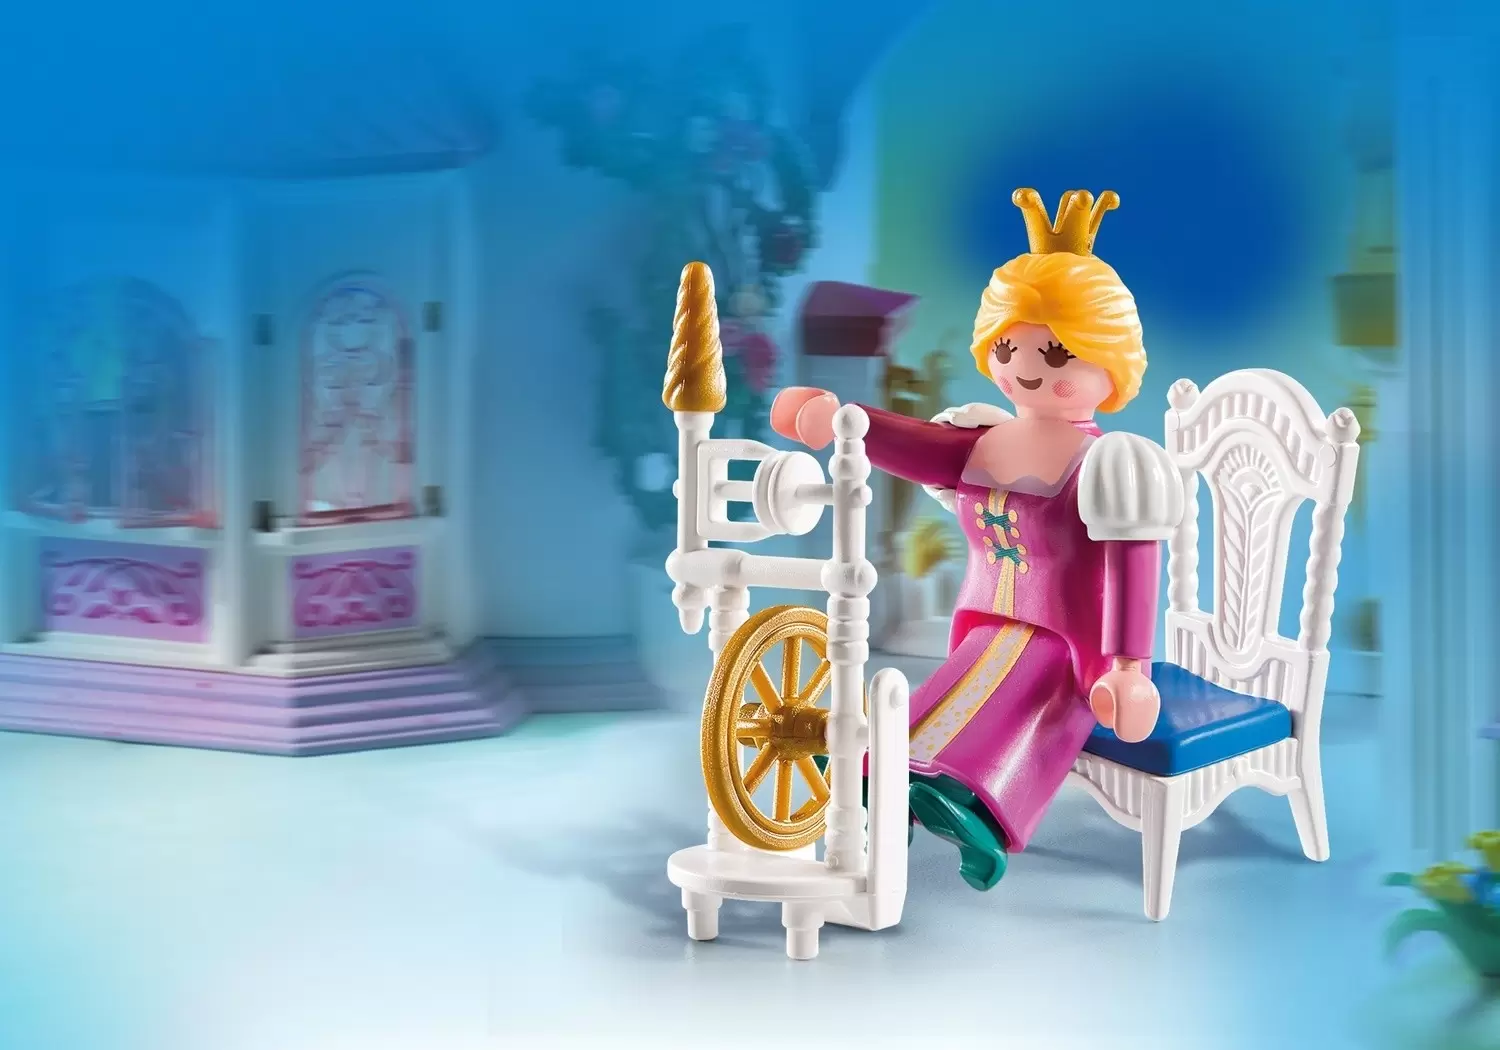 Playmobil SpecialPlus - Princess with Weaving Wheel